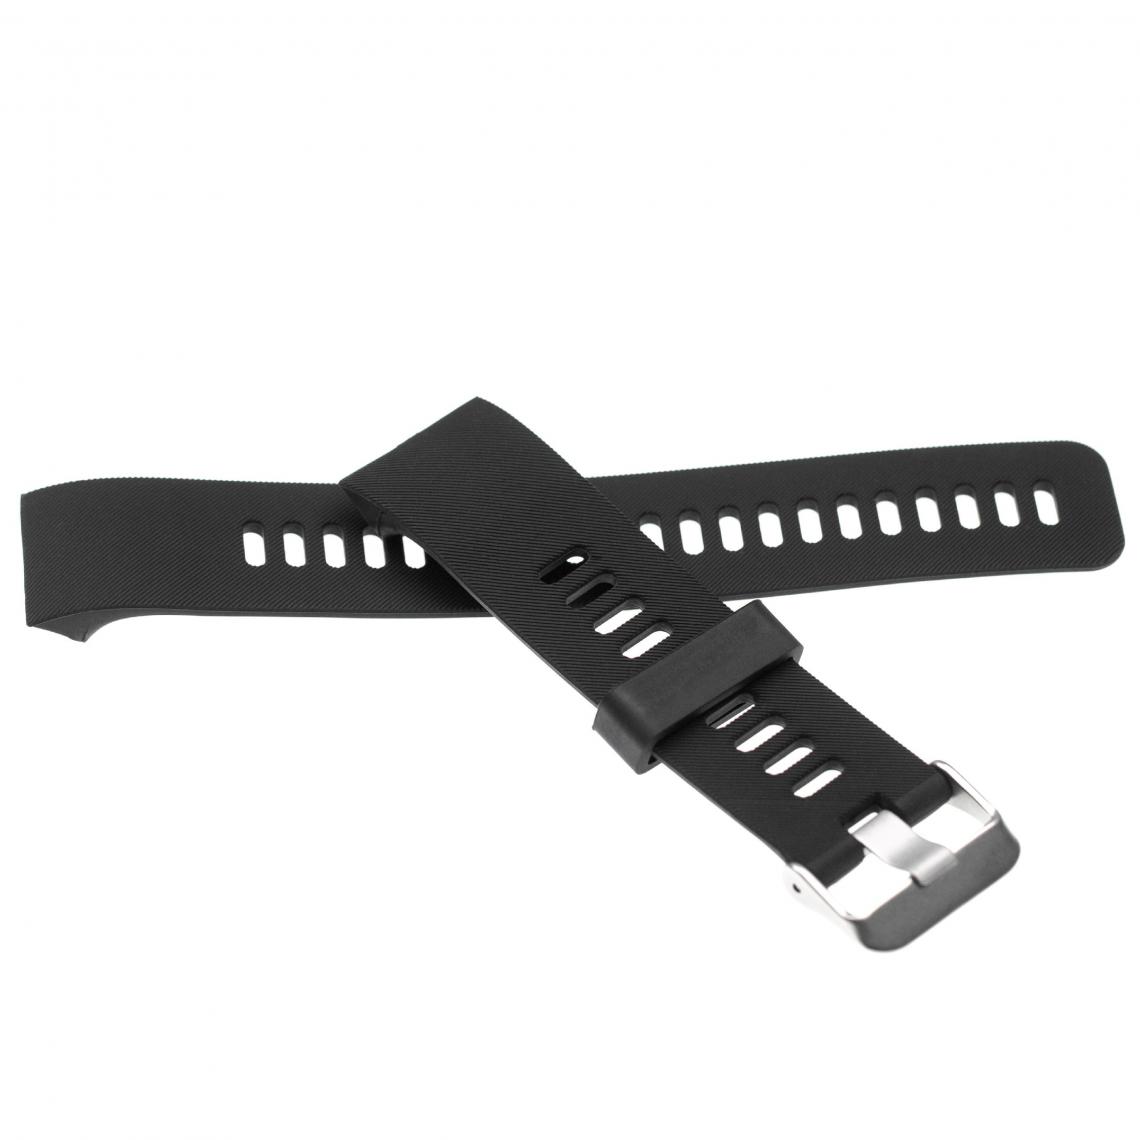 Vhbw - vhbw bracelet compatible avec Garmin Forerunner 30, 35 montre connectée - 13,5 + 9,4 cm silicone noir - Accessoires montres connectées